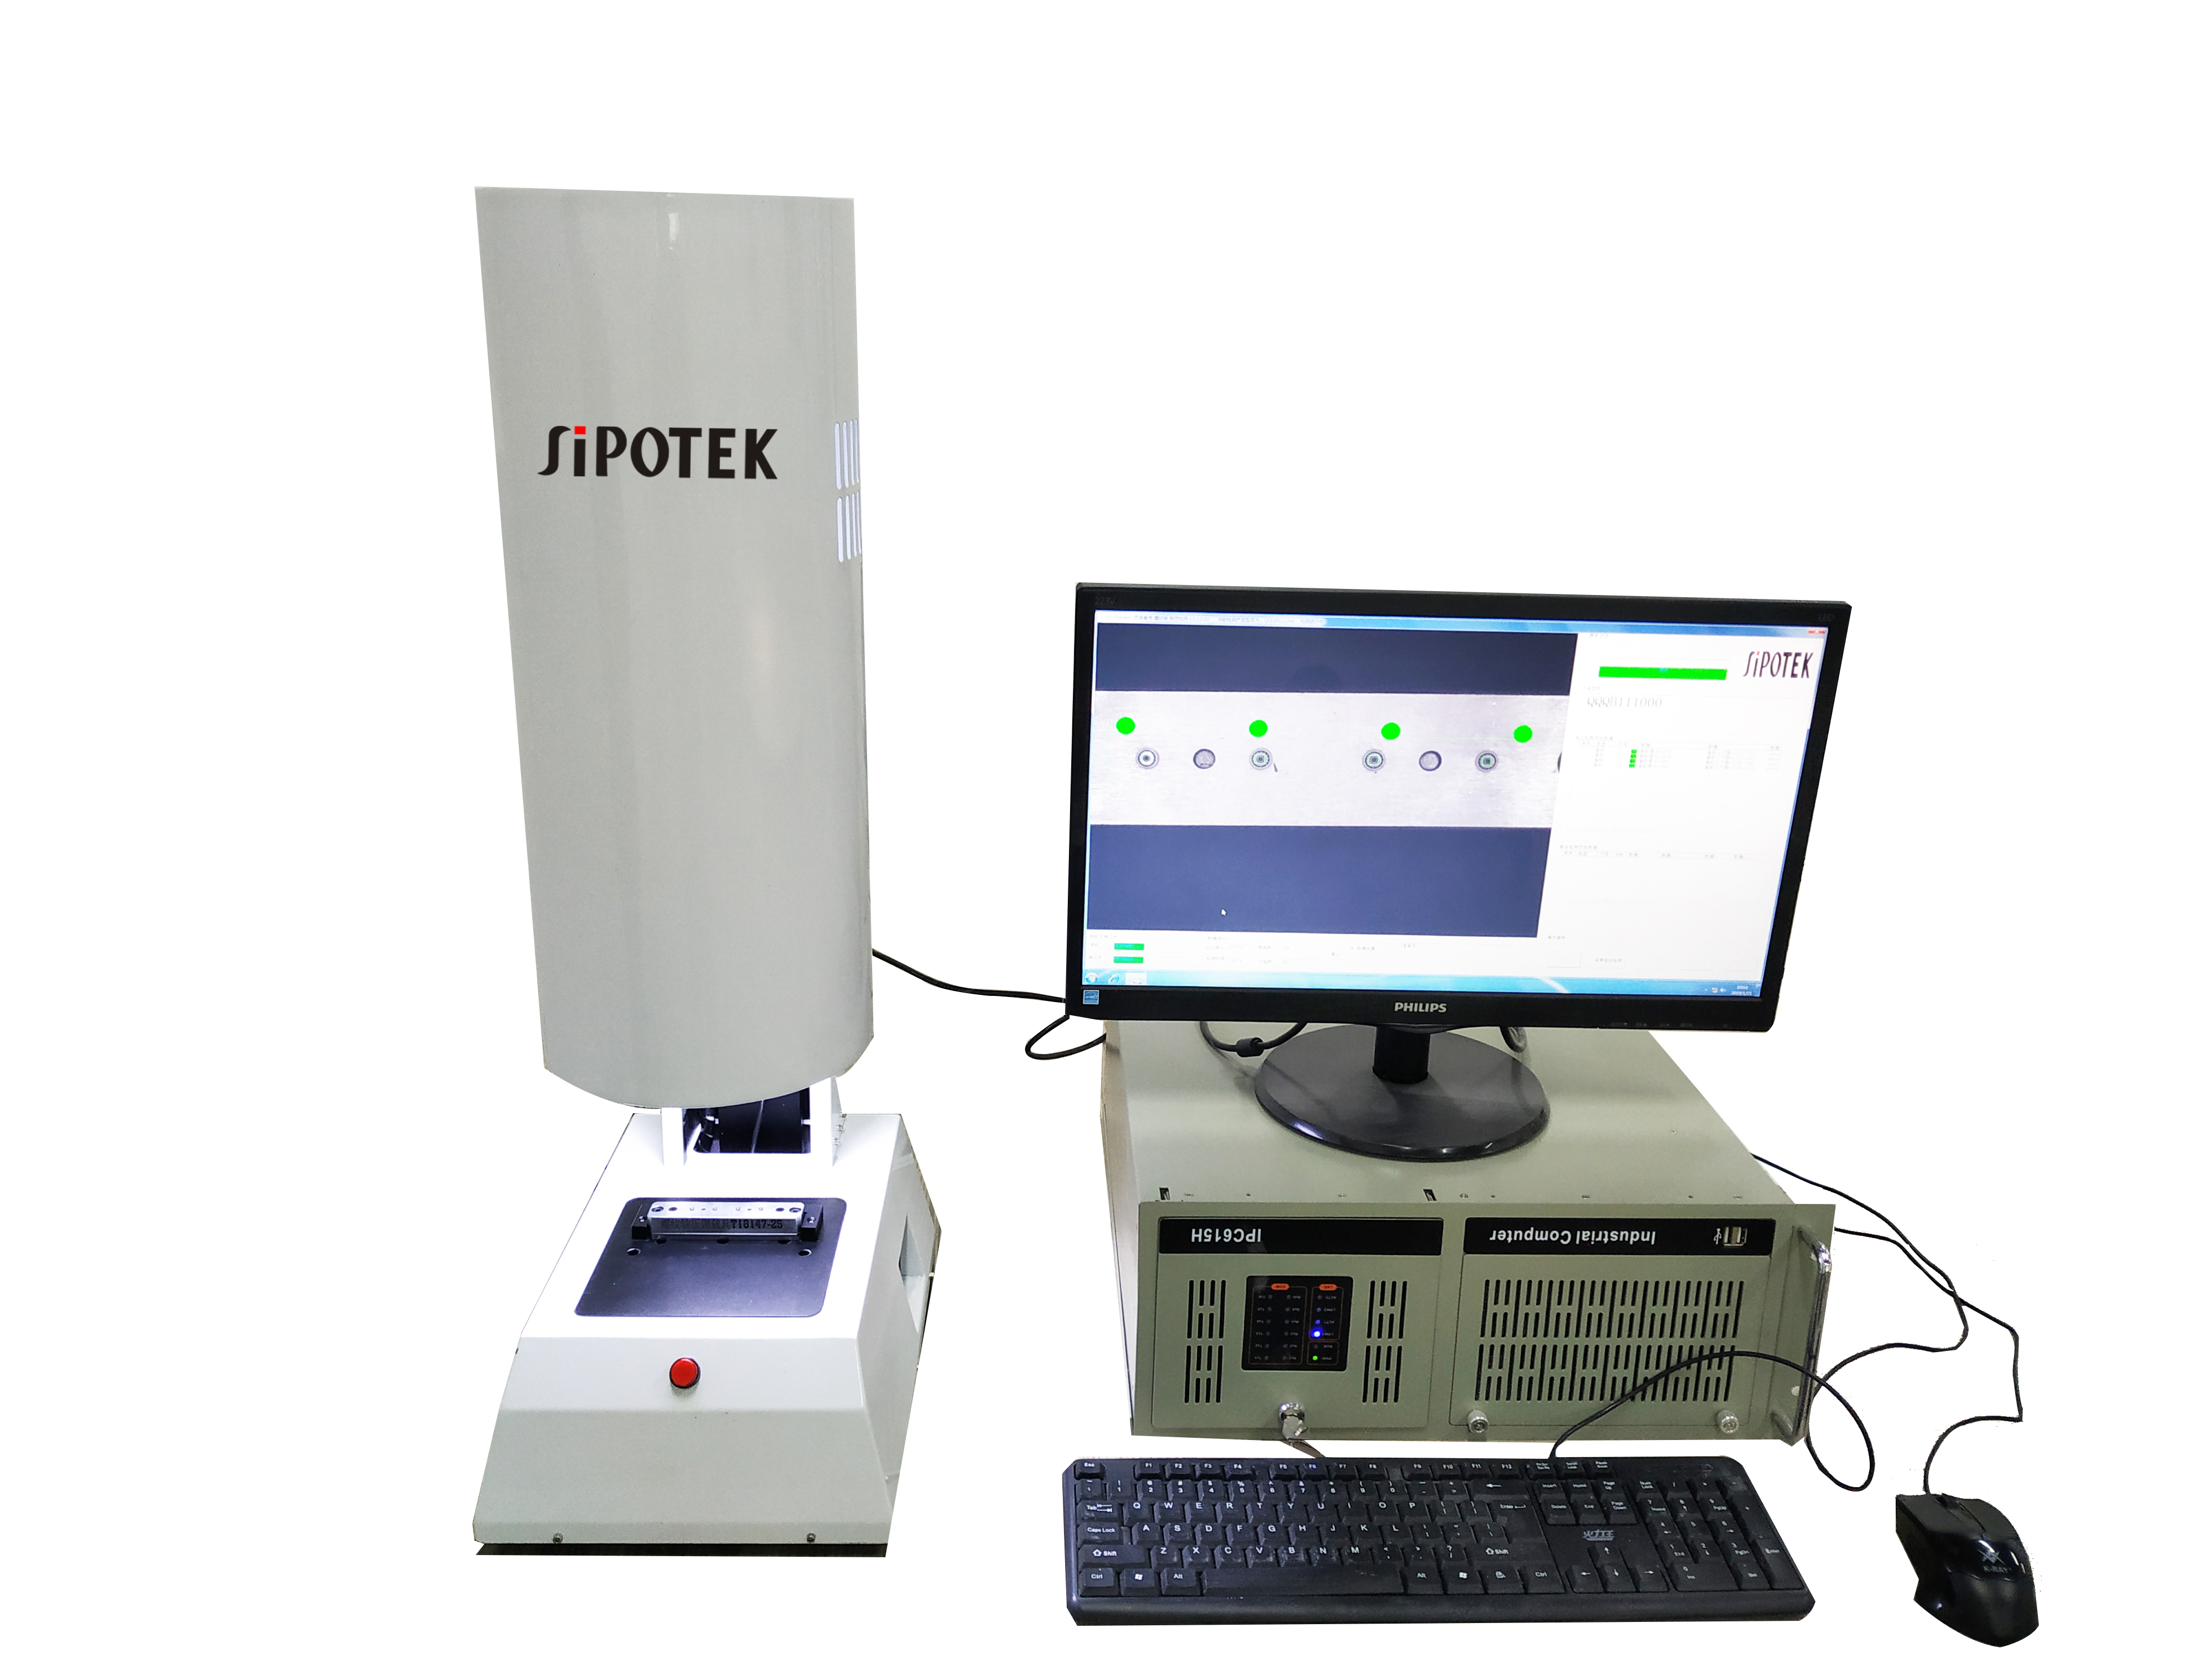 螺丝光学筛选机 ccd机器视觉检测系统 光学检测机 光学筛选机厂家供货商